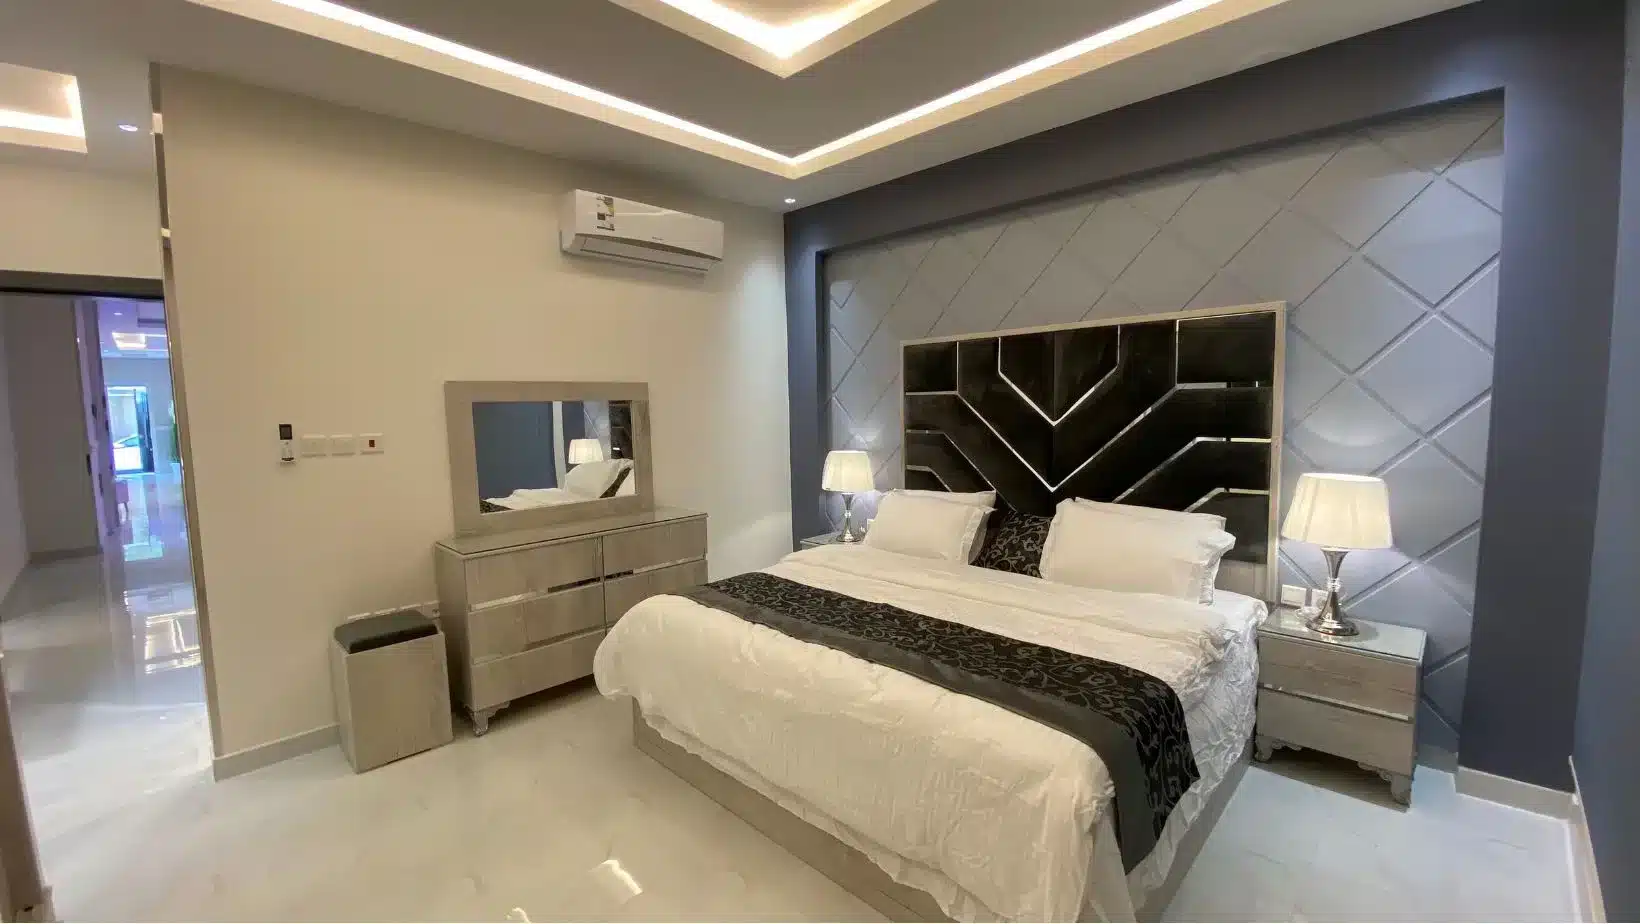 شقق مجمع سامسونج بالعليا الرياض، Samsung complex apartments in Olaya, Riyadh